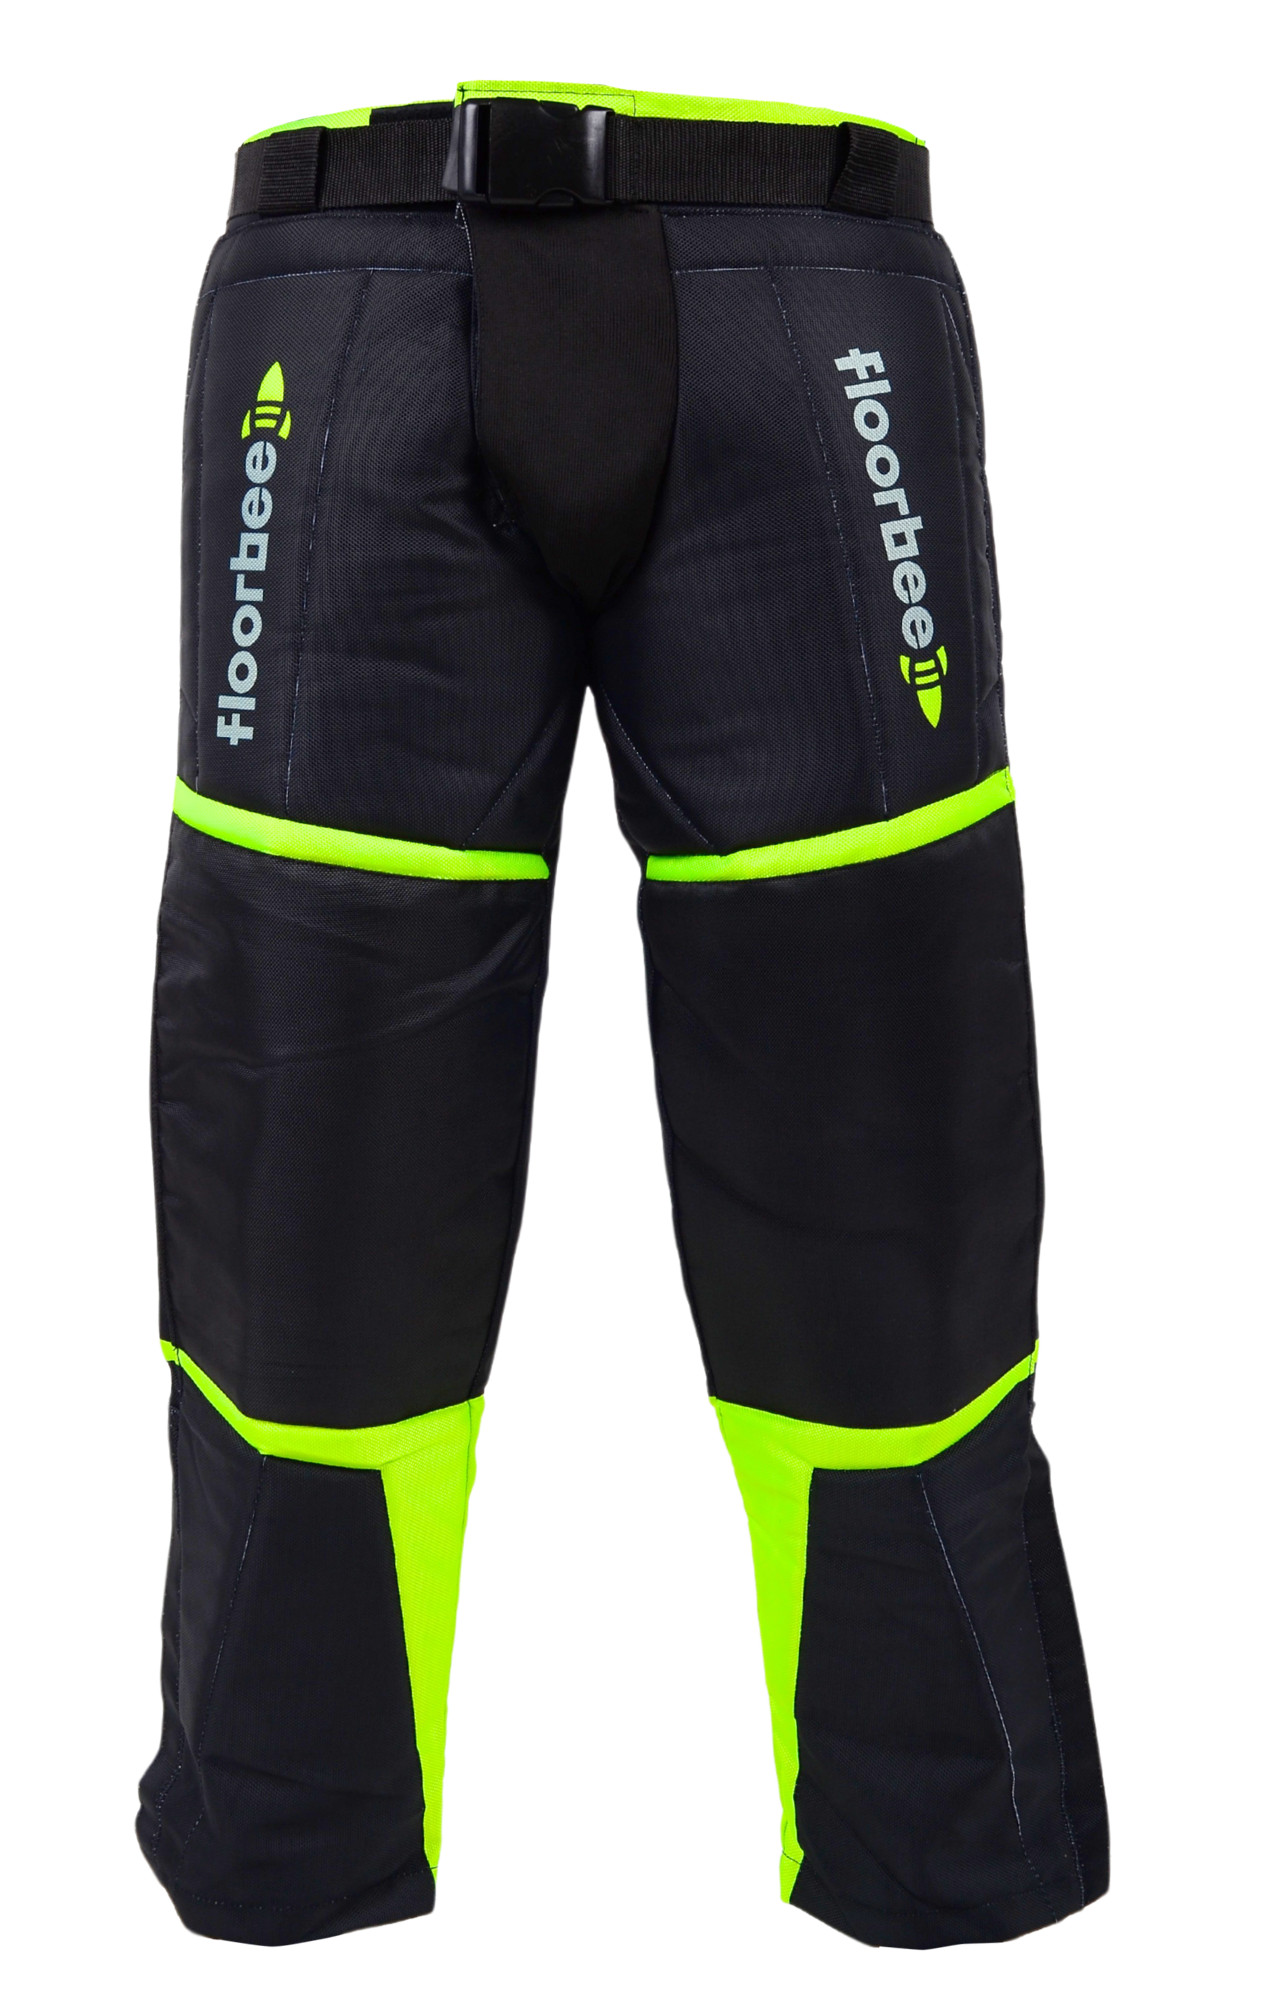 FLOORBEE Goalie Armor Pants 3.0 L, černá / žlutá